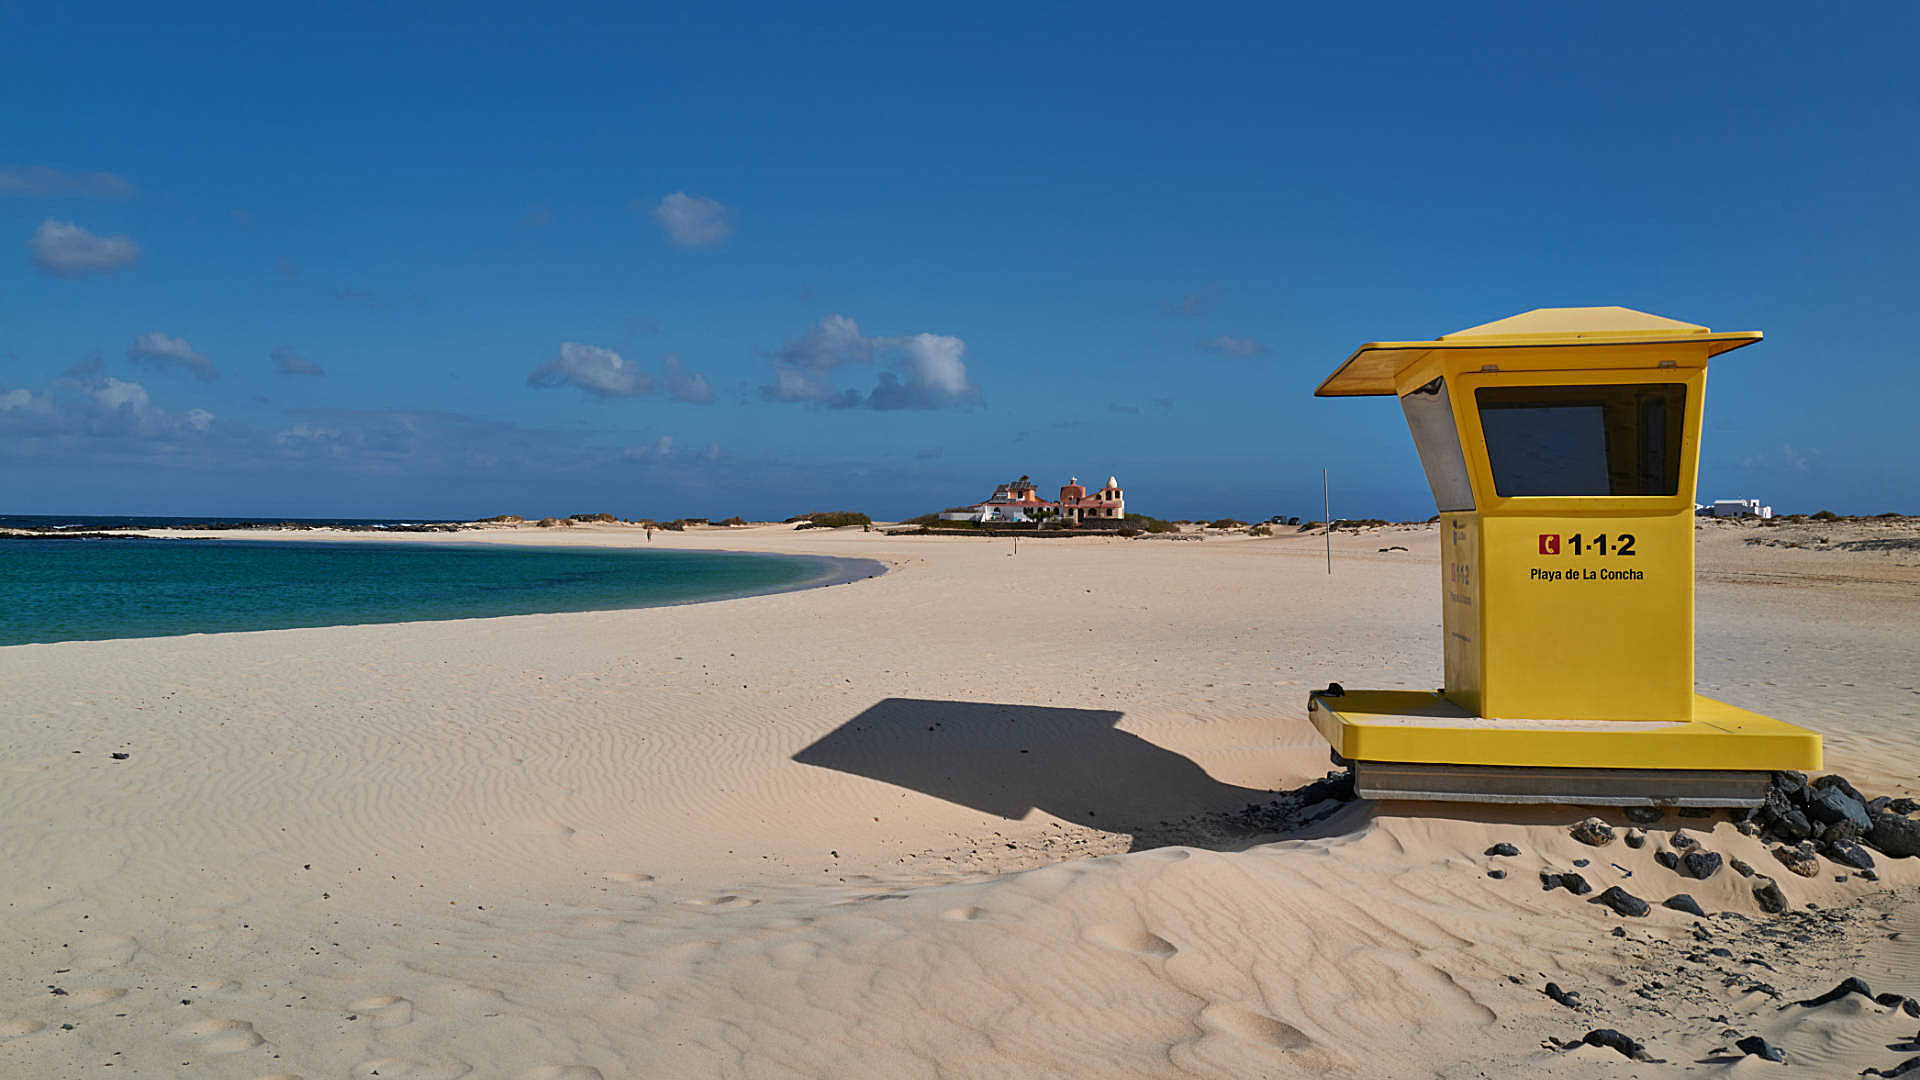 Die am häufigsten gestellten Fragen über Fuerteventura – hier sind die Antworten.